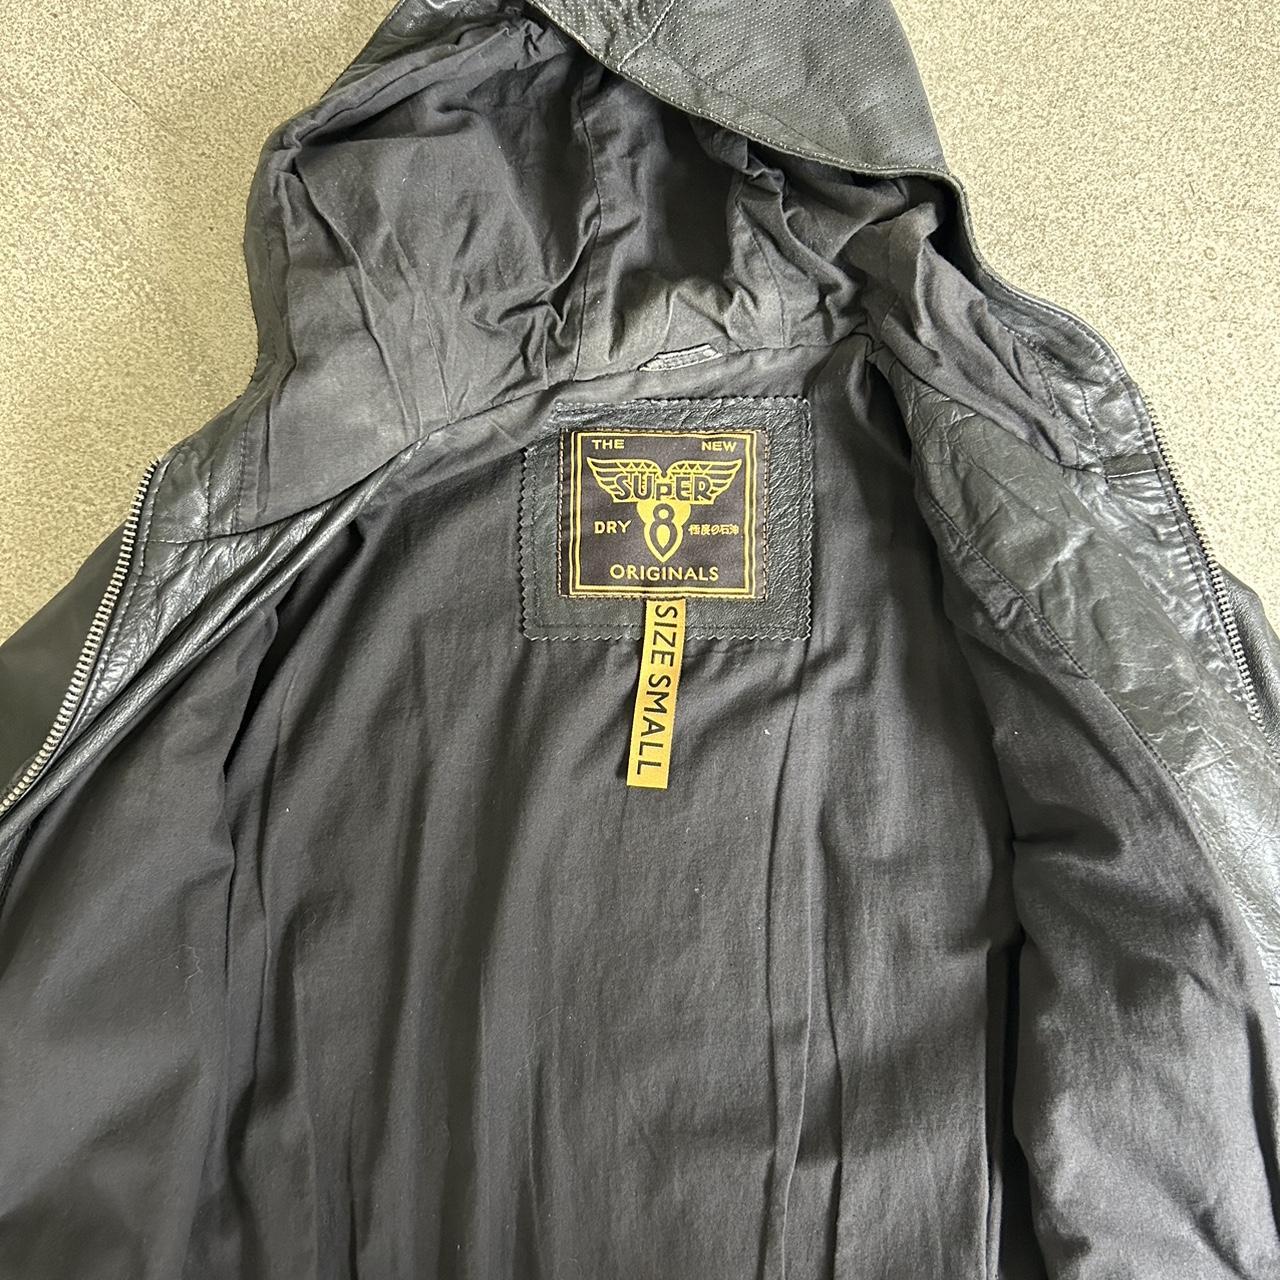 SUPERDRY leather jacket- broken zip runners – Zip Experts